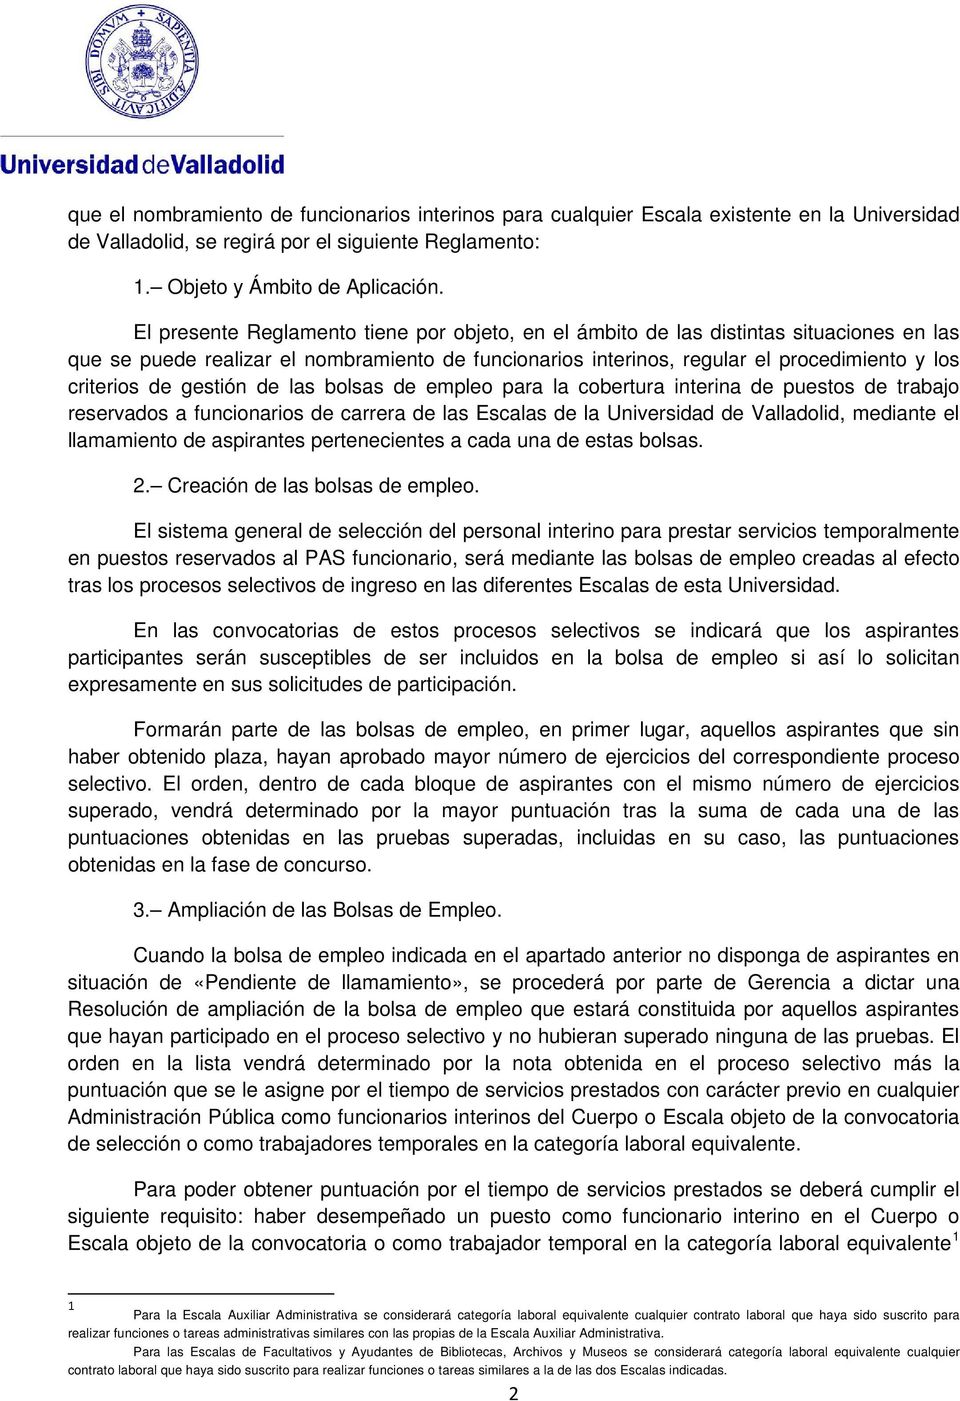 gestión de las bolsas de empleo para la cobertura interina de puestos de trabajo reservados a funcionarios de carrera de las Escalas de la Universidad de Valladolid, mediante el llamamiento de